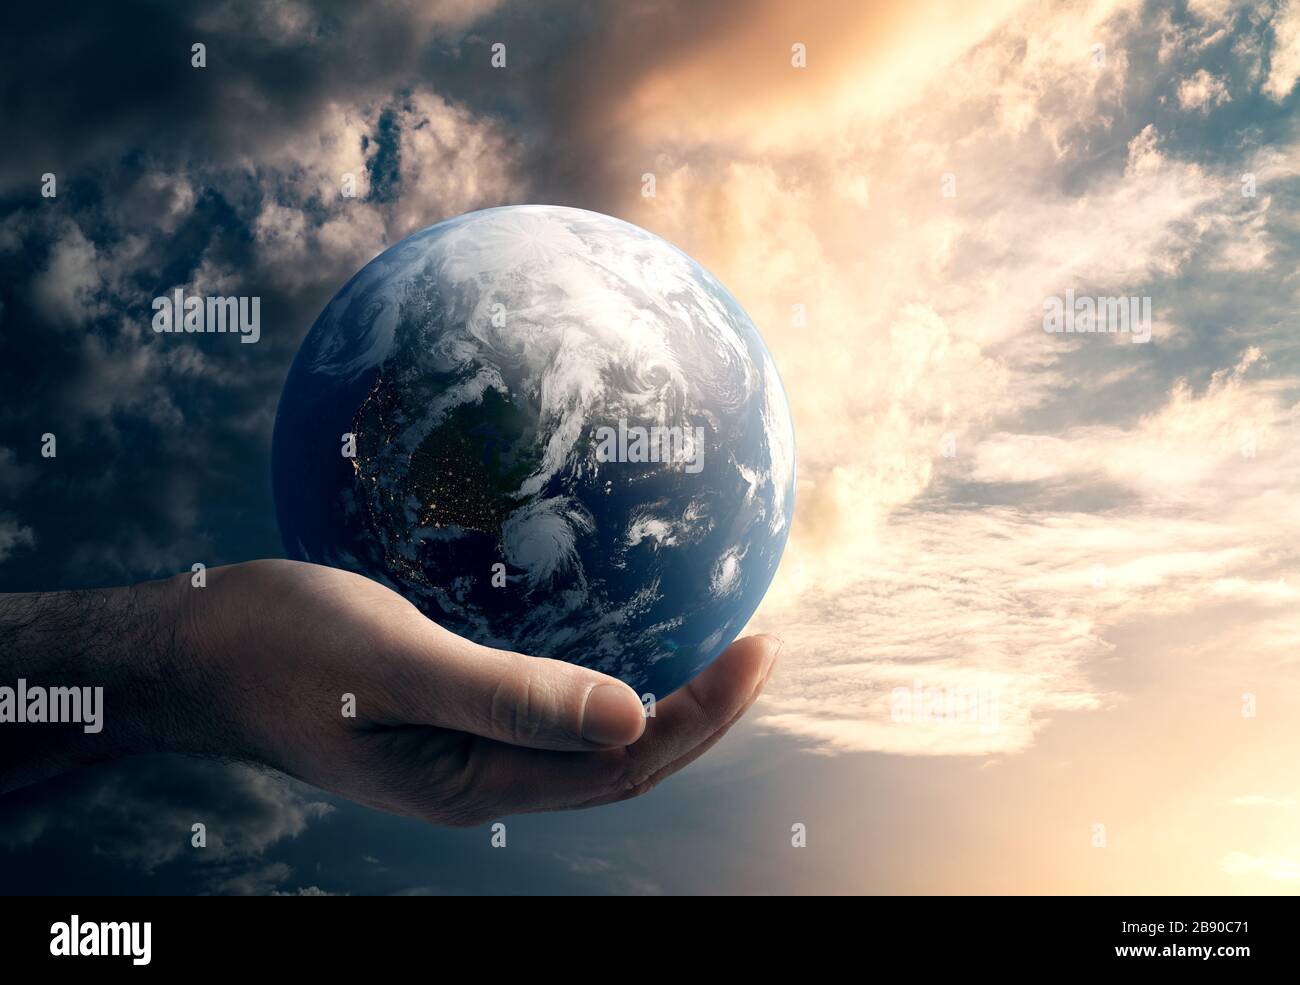 Globales Risiko- und Umweltkonzept. Elemente dieses Bildes, das von der NASA eingerichtet wurde. 3D-Rendering Stockfoto